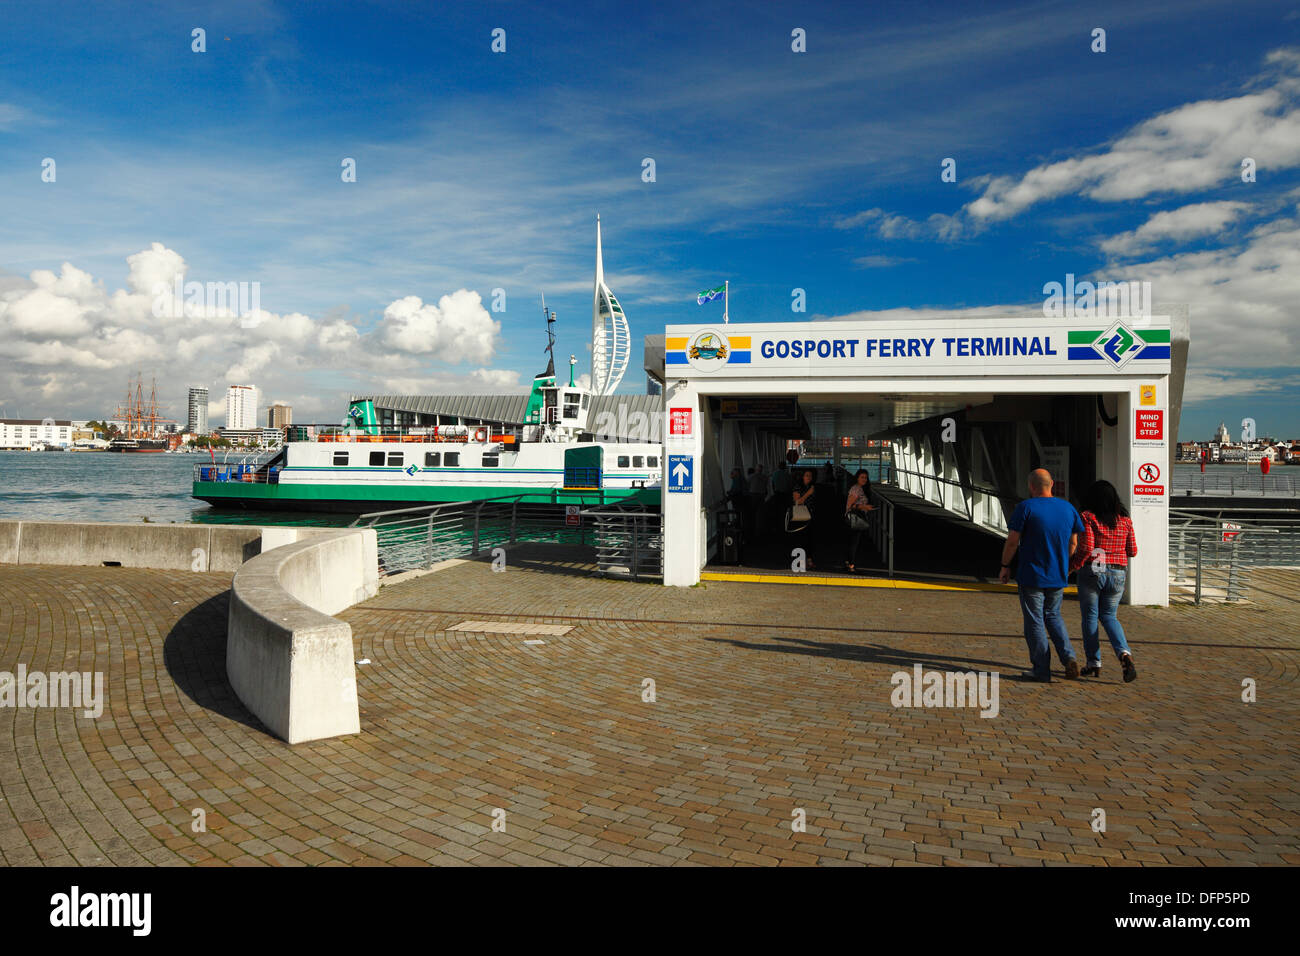 The Gosport to Portsmouth ferry terminal. Stock Photo